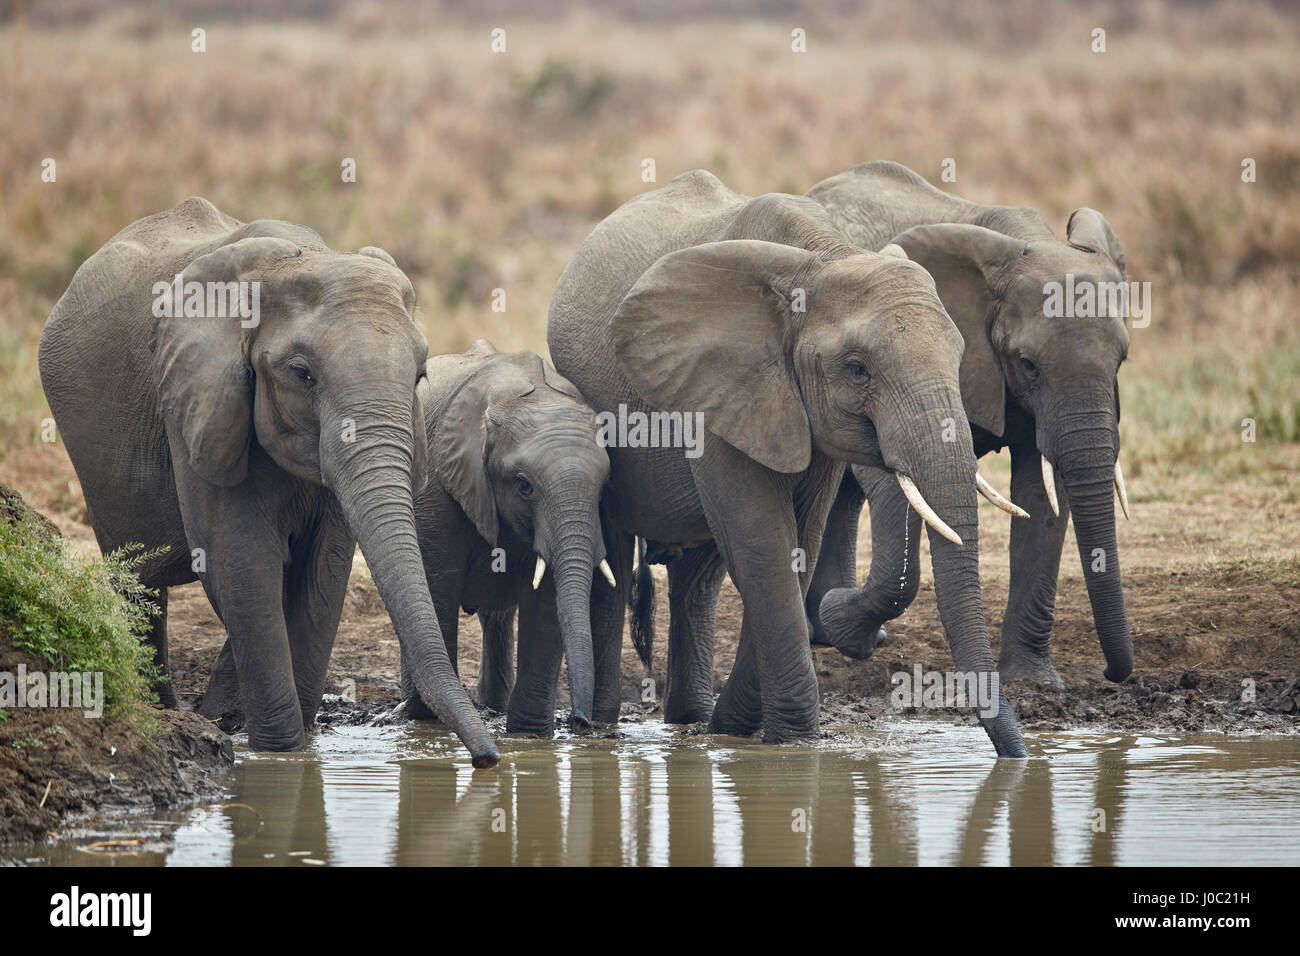 L'éléphant africain (Loxodonta africana) boire, Parc National de Mikumi, Tanzanie Banque D'Images